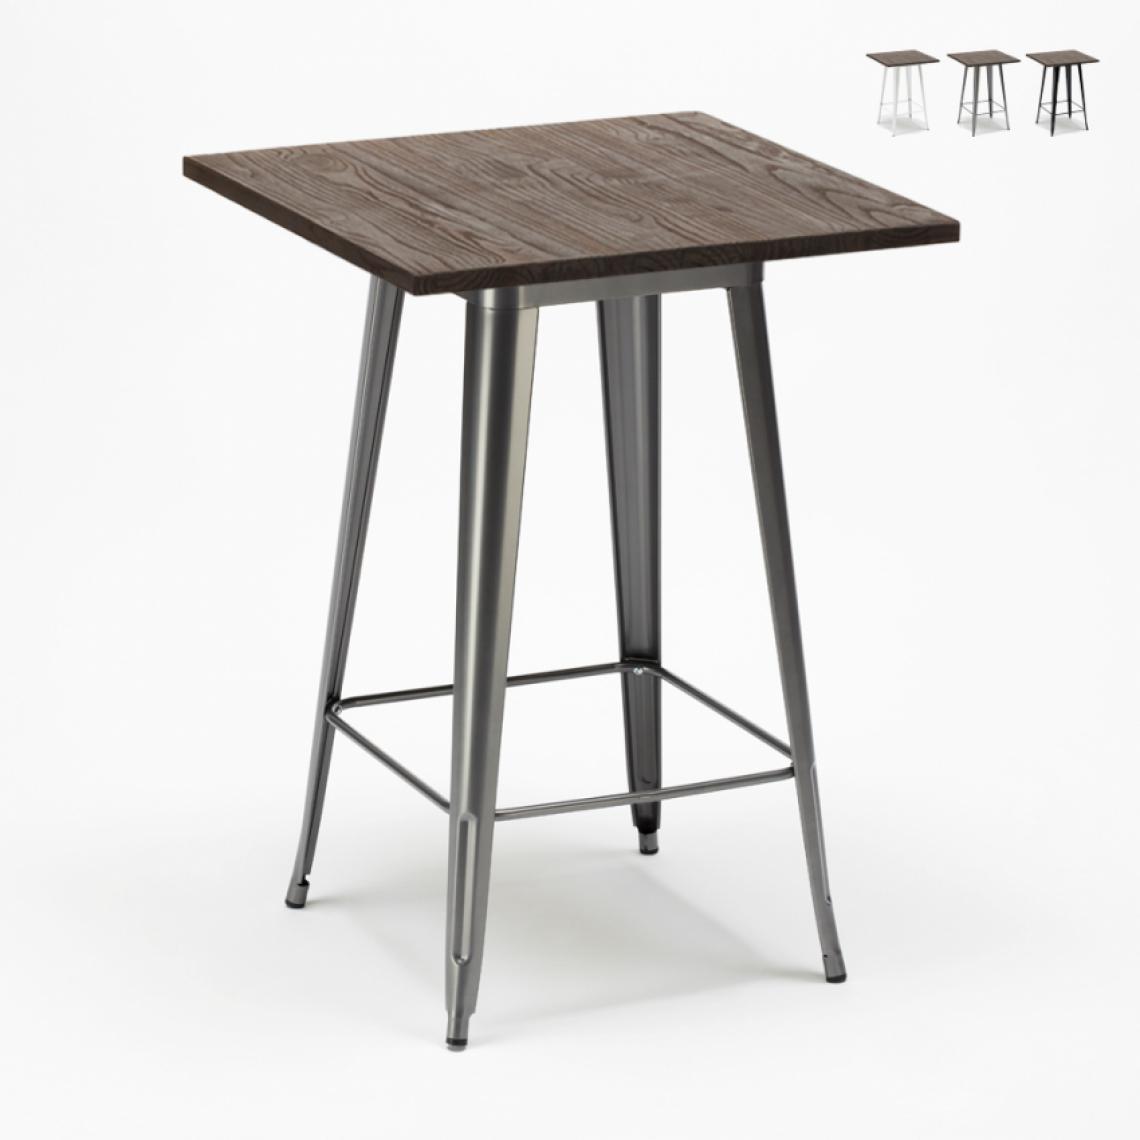 Ahd Amazing Home Design - Table haute pour tabourets Tolix industriel en métal acier et bois 60x60 Welded, Couleur: Gris - Tables à manger